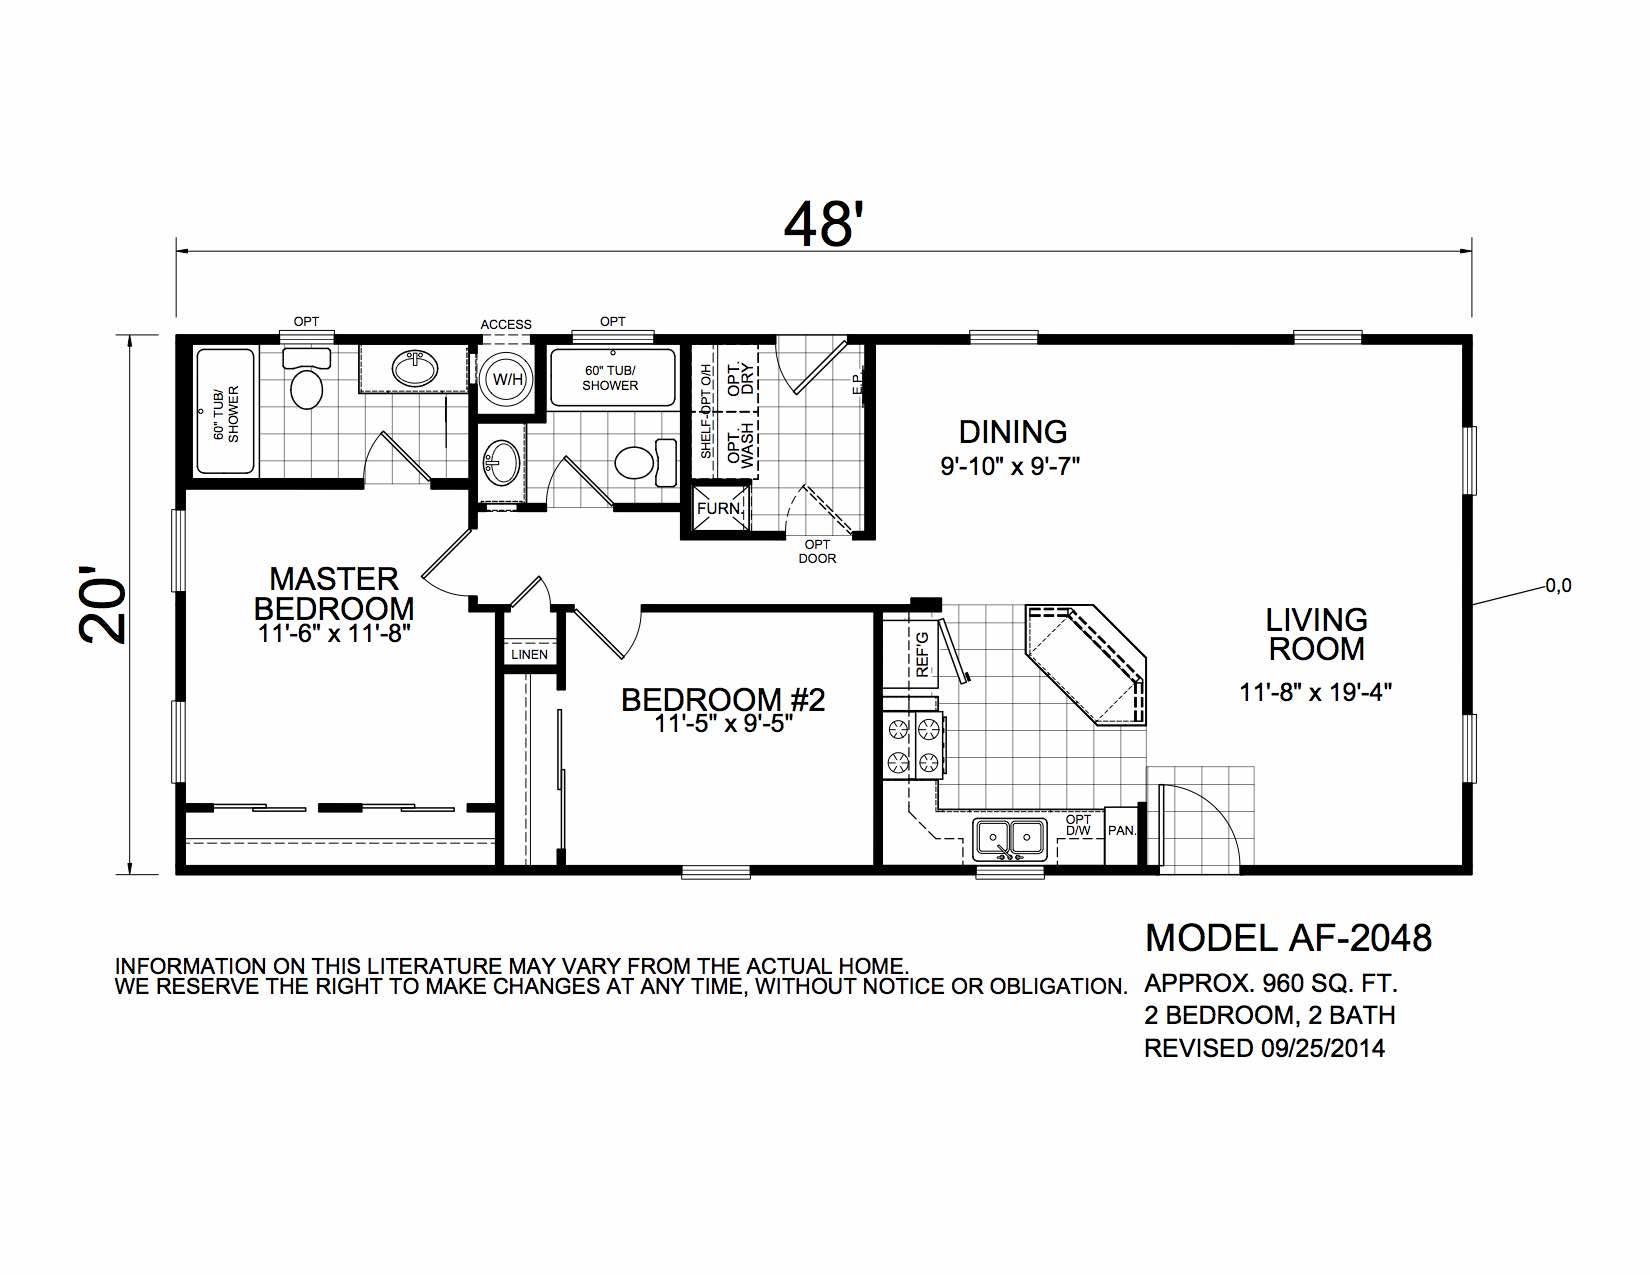 Homes Direct Modular Homes - Model AF2048 - Floorplan